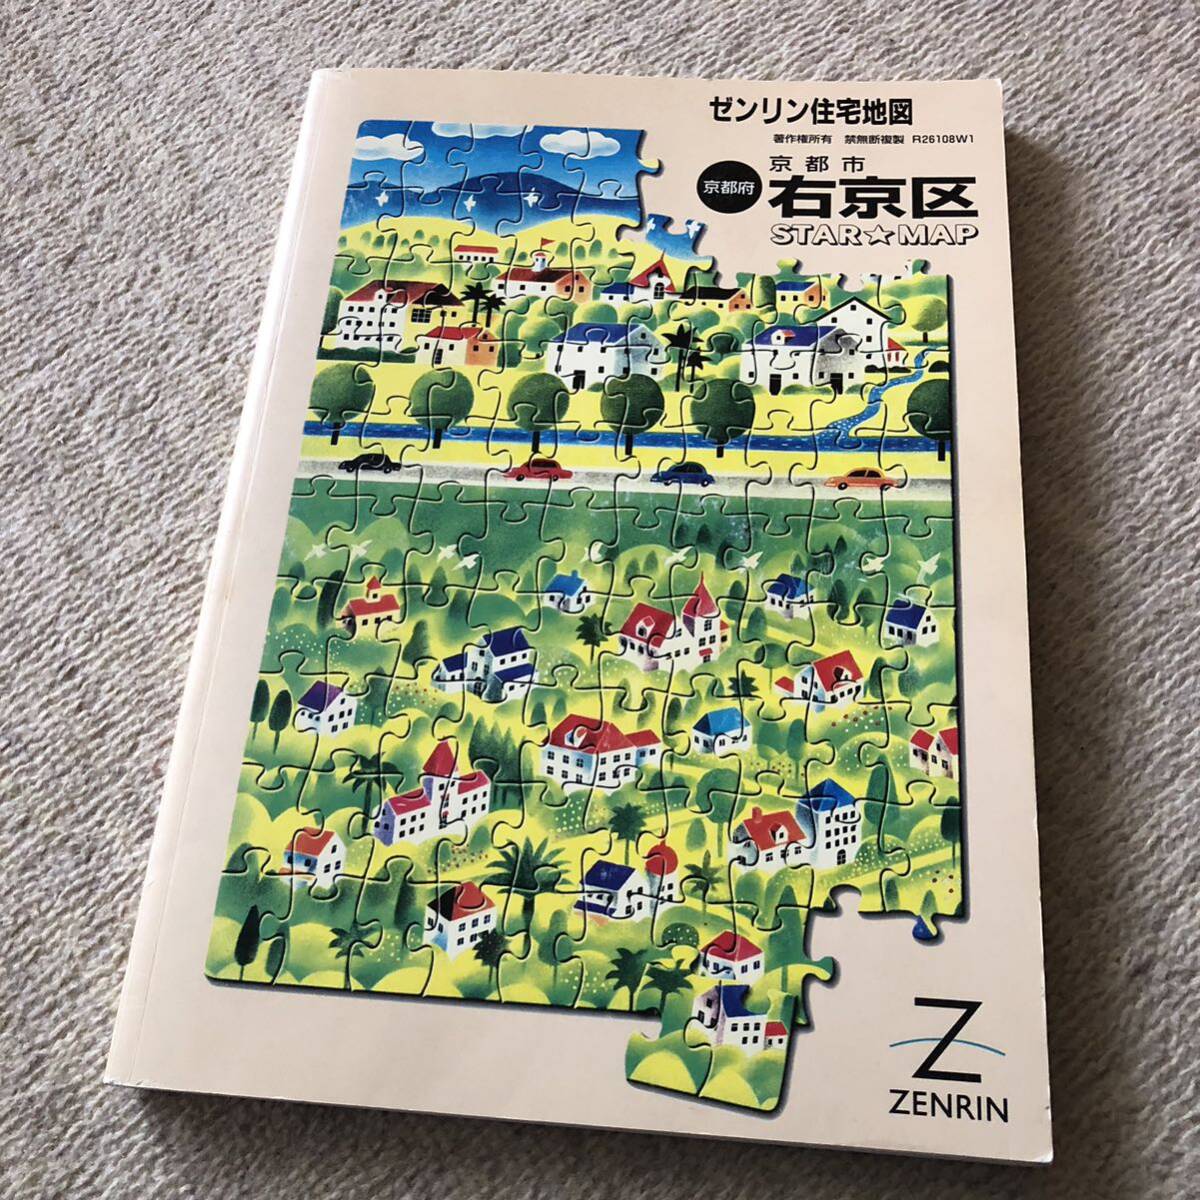 ゼンリン住宅地図 京都市 「右京区」 2001年A4コンパクト版 中古良品の画像1